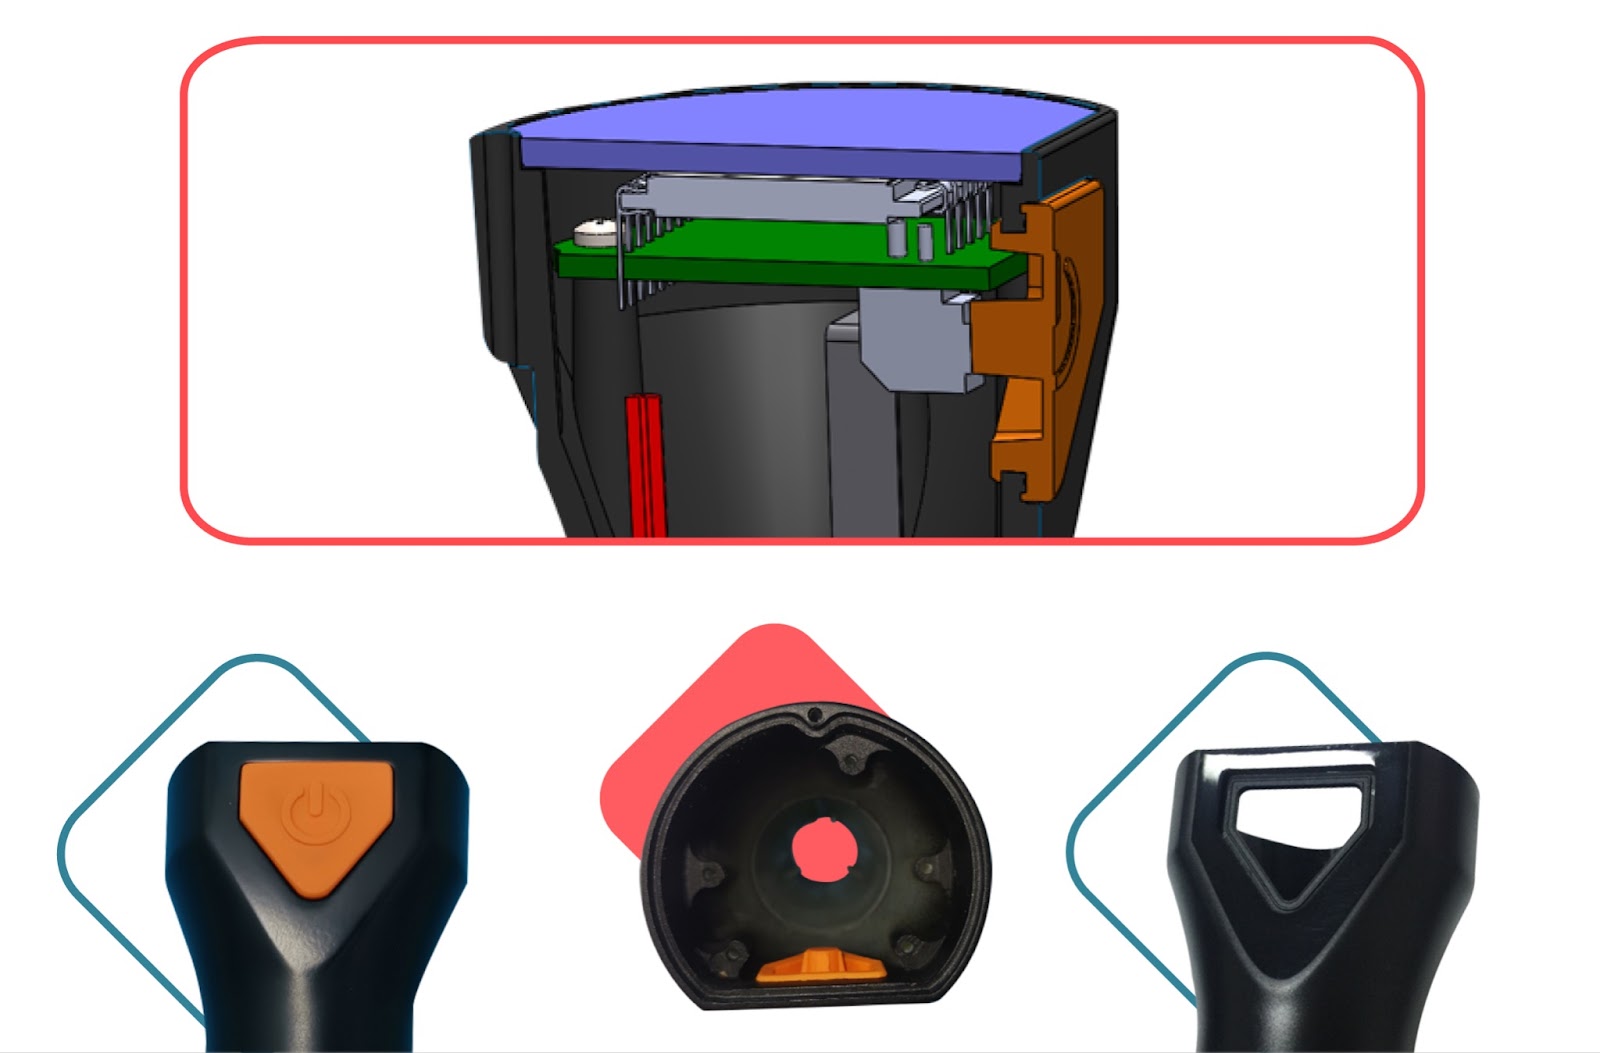 Компоненты корпуса глубиномера на разных этапах разработки и прототипирования